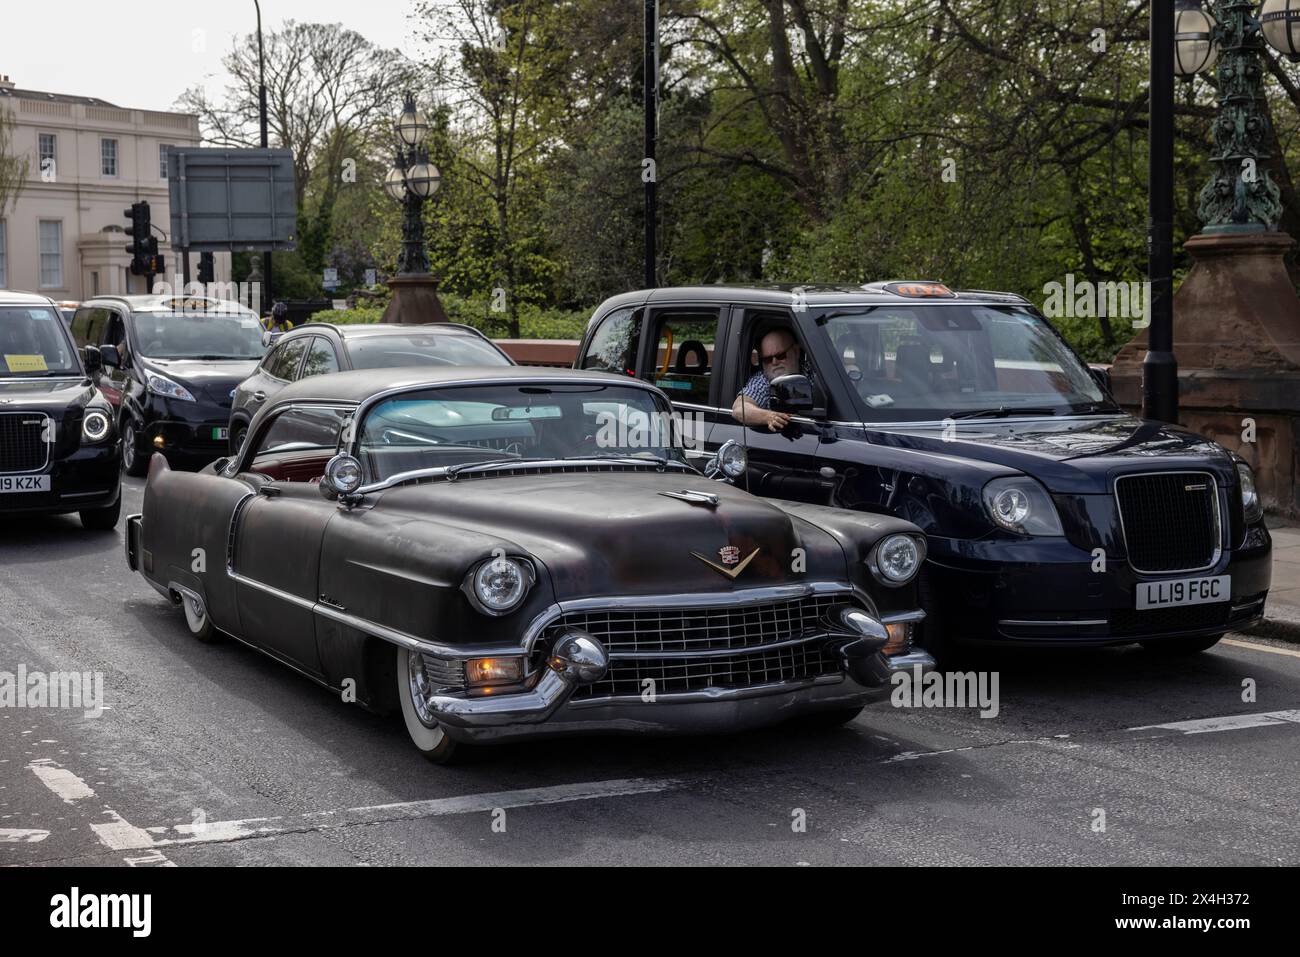 Cadillac de Ville, im Verkehr neben einem Londoner Taxi gehalten, Regents Park, Central London, England, Großbritannien Stockfoto